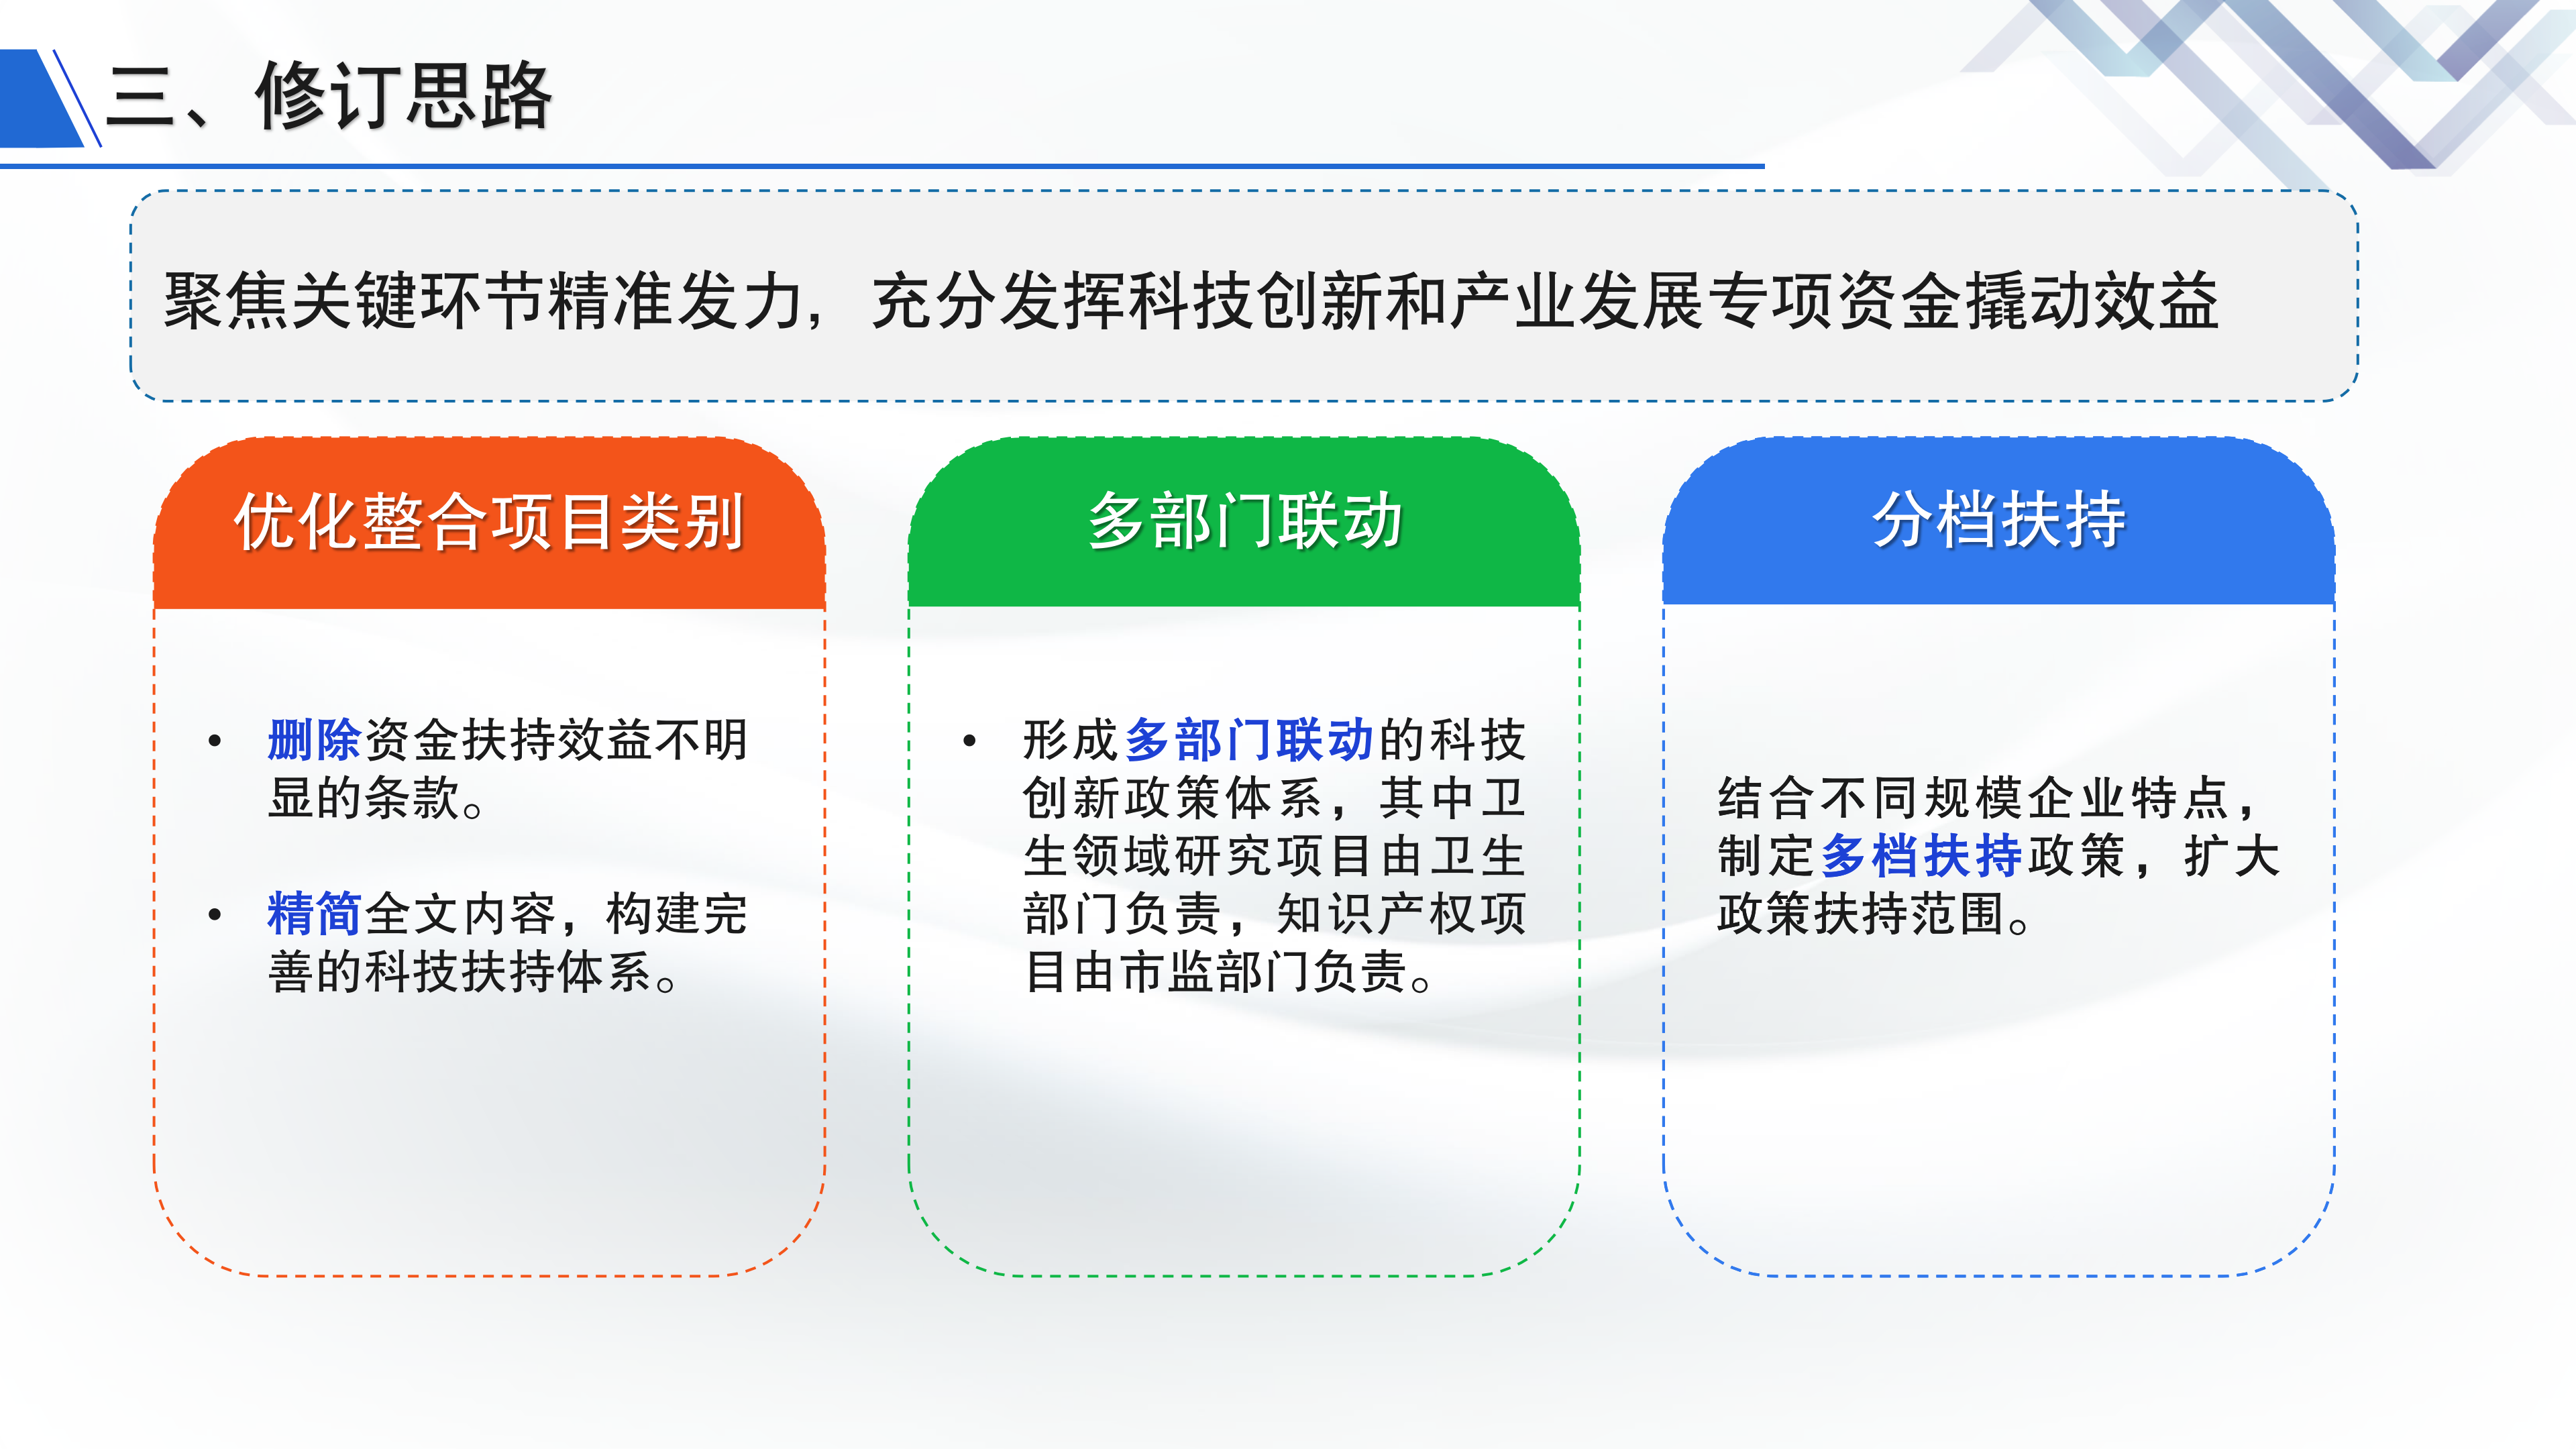 《深圳市大鹏新区关于加强科技研发促进技术创新的若干措施》政策解读_05.png